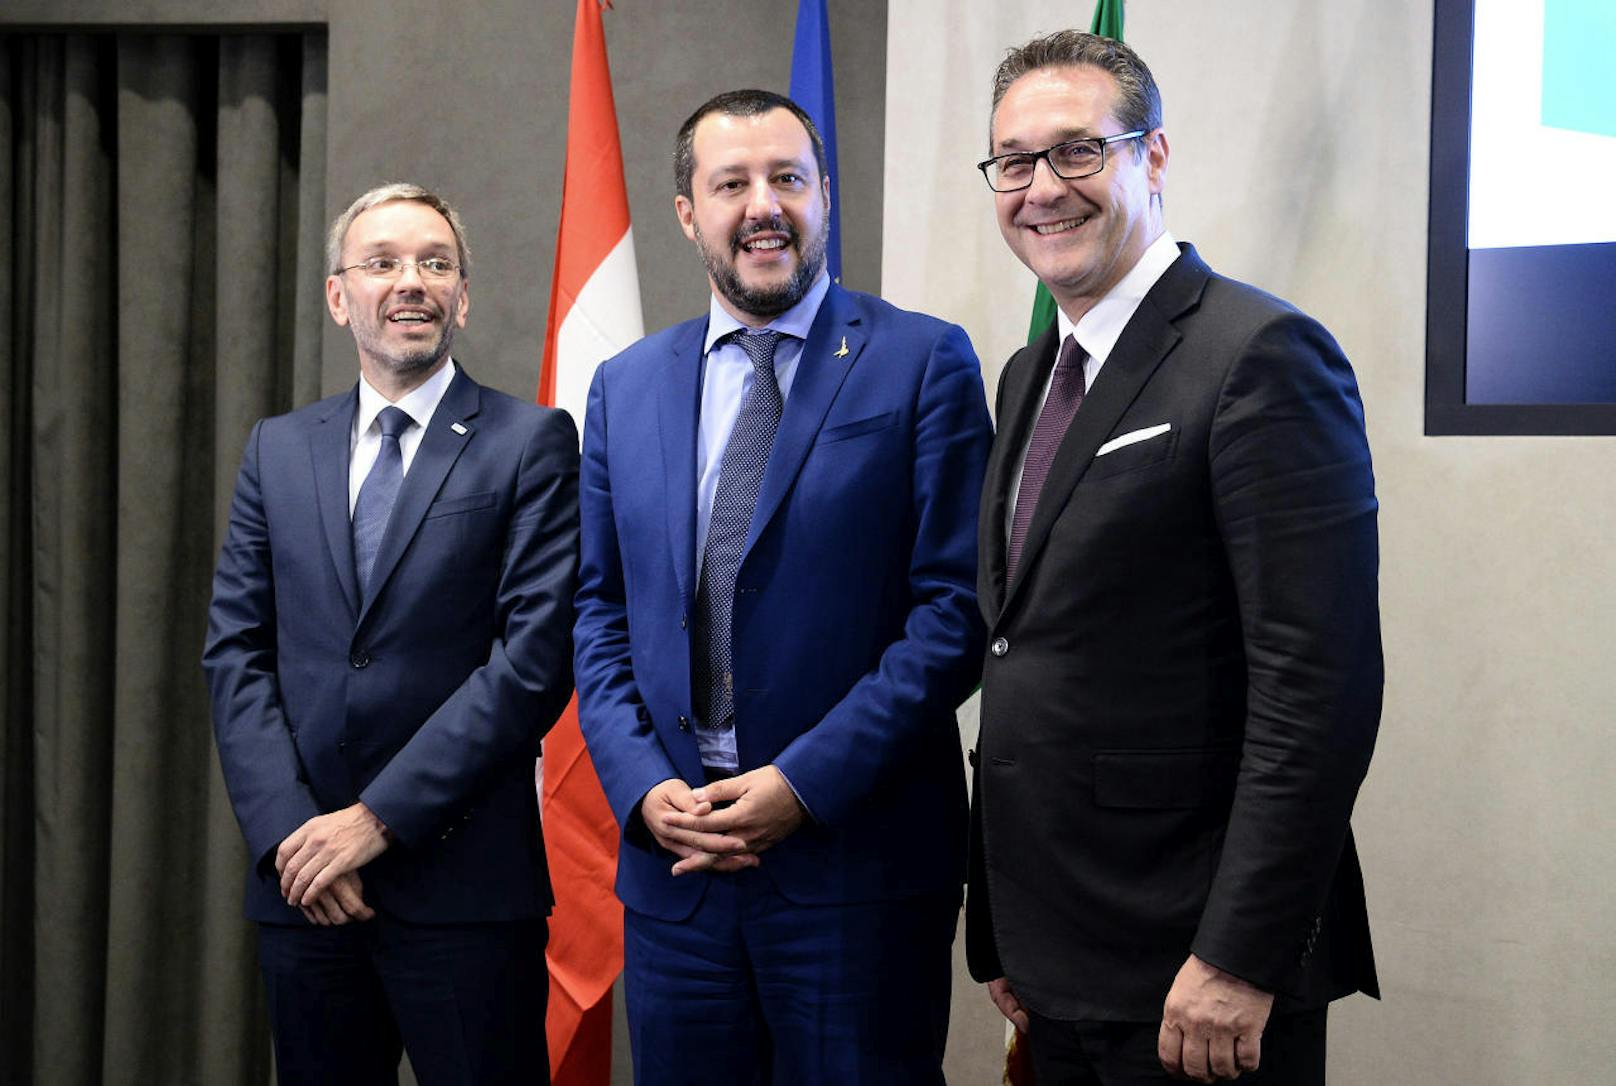 Matteo Salvini empfängt Österreichs Vizekanzler Heinz Christian Strache und Innenminister Herbert Kickl